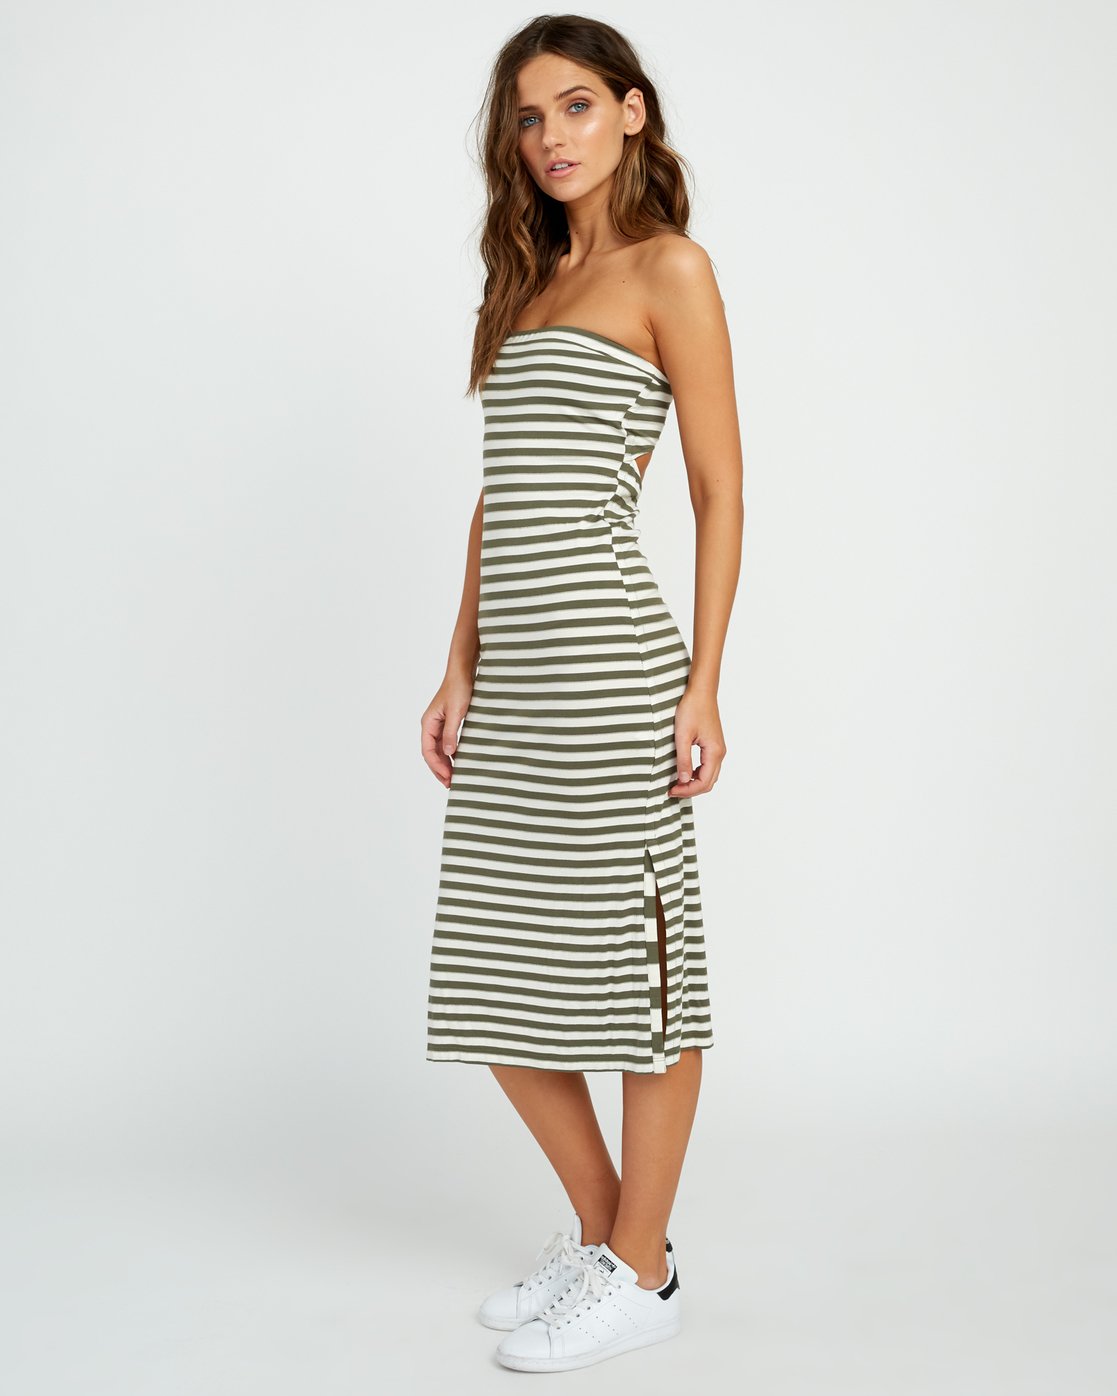 RVCA Steady - Strapless Bodycon Dress - Striped Midi Dress - Lulus